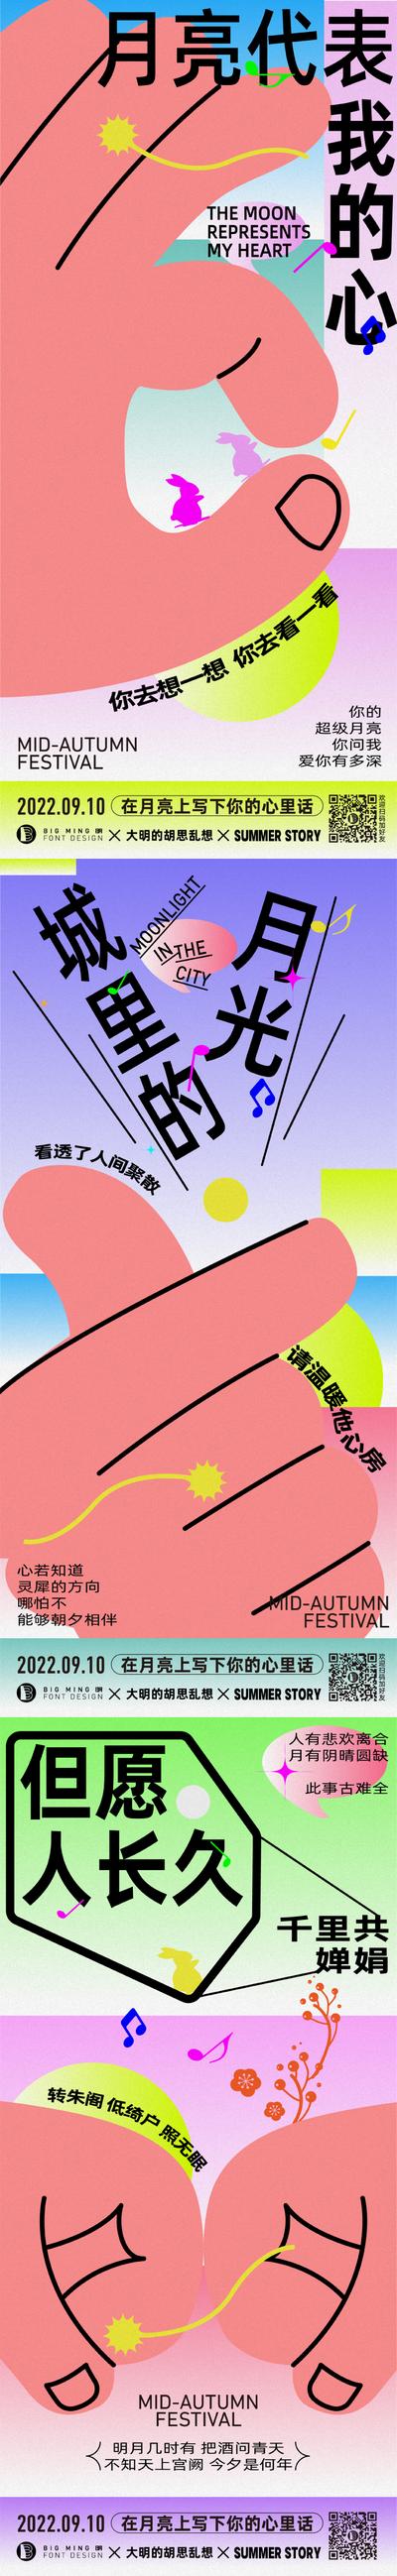 【南门网】海报 地产 中秋节  音乐  歌曲  创意  手势  甜蜜 系列  